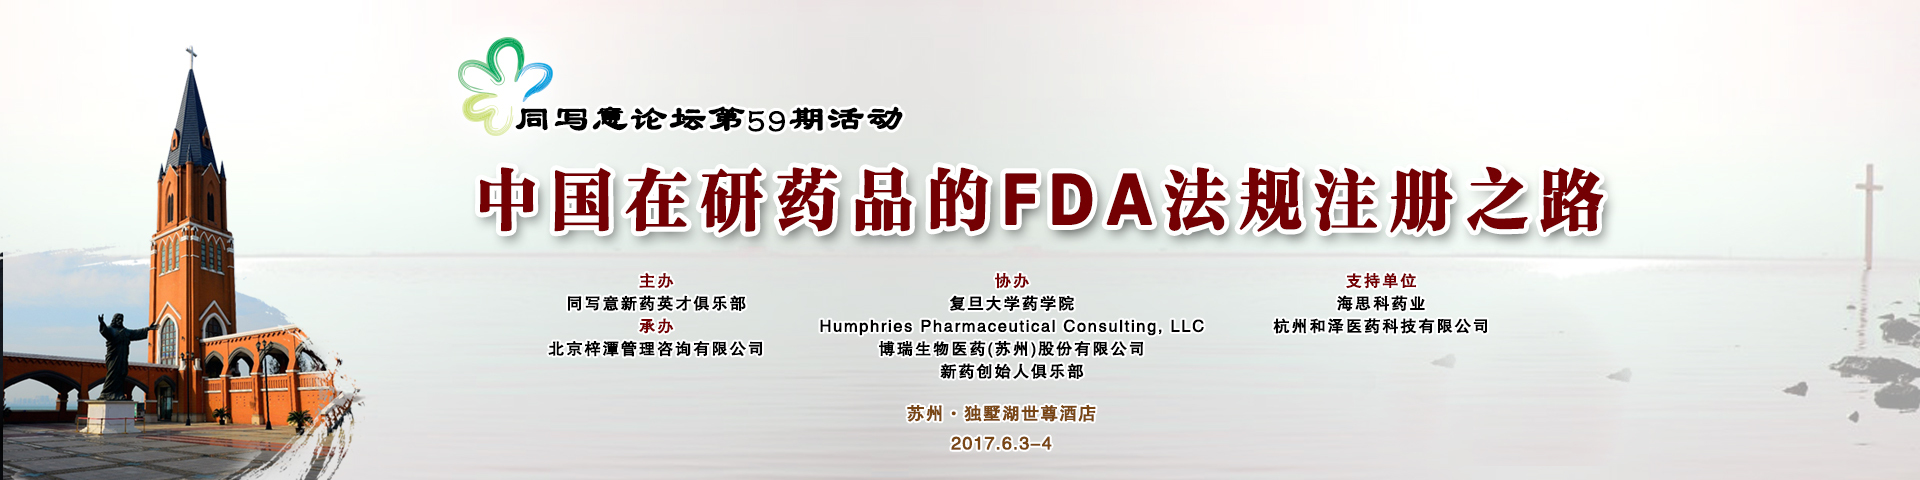 同写意论坛第59期-中国在研药品的FDA法规注册之路